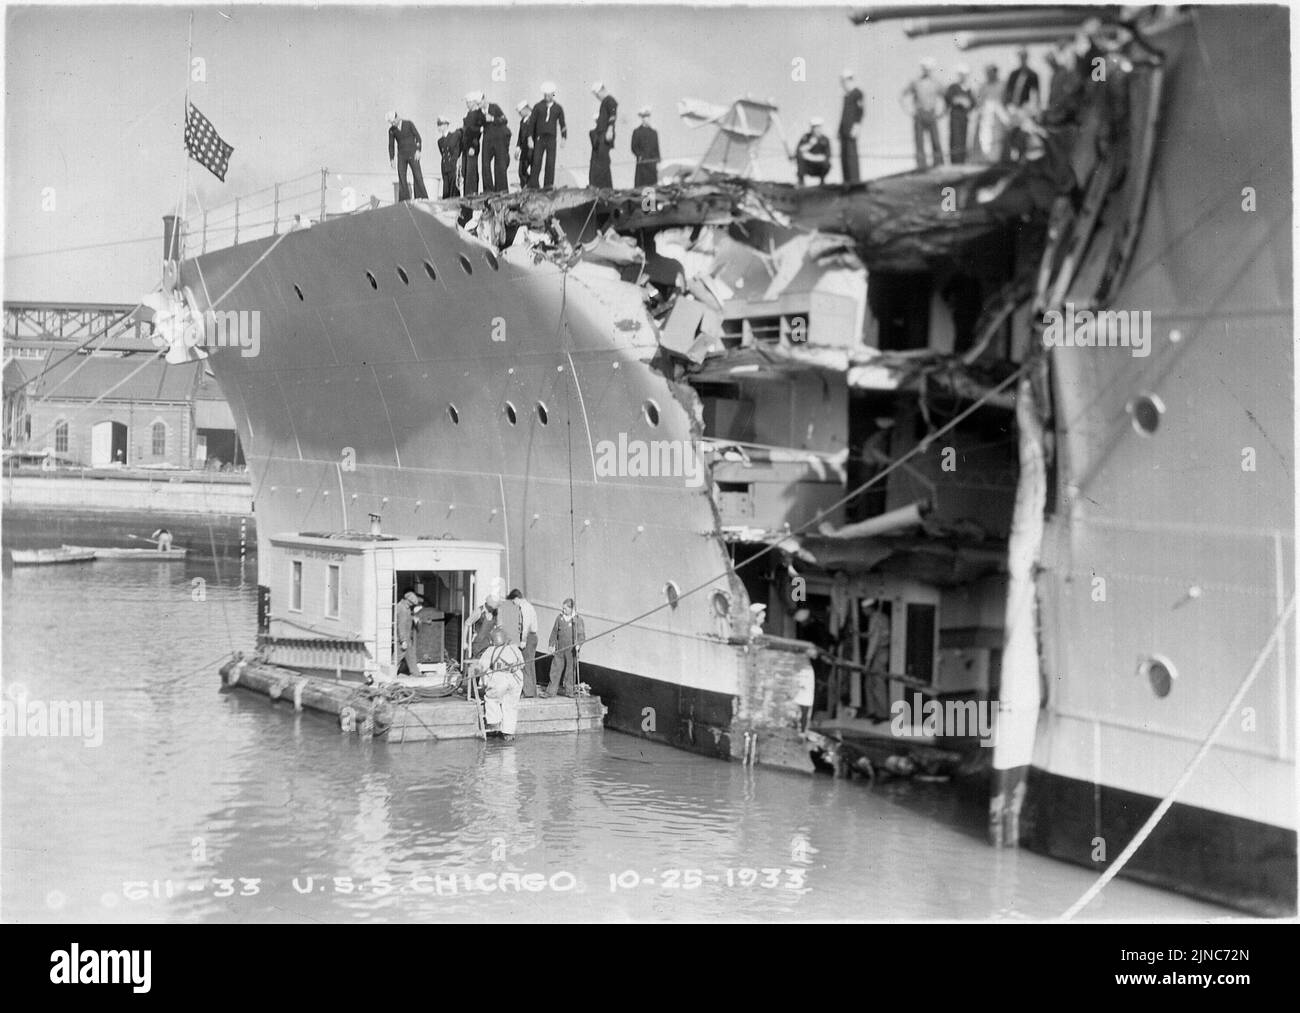 Die USS Chicago wurde am 25. Oktober 1933 mit dem Tauchschiff von Mare Island neben dem Marinehafen von Mare Island nach ihrer Kollision mit dem britischen Frachter Silver Palm beschädigt Stockfoto